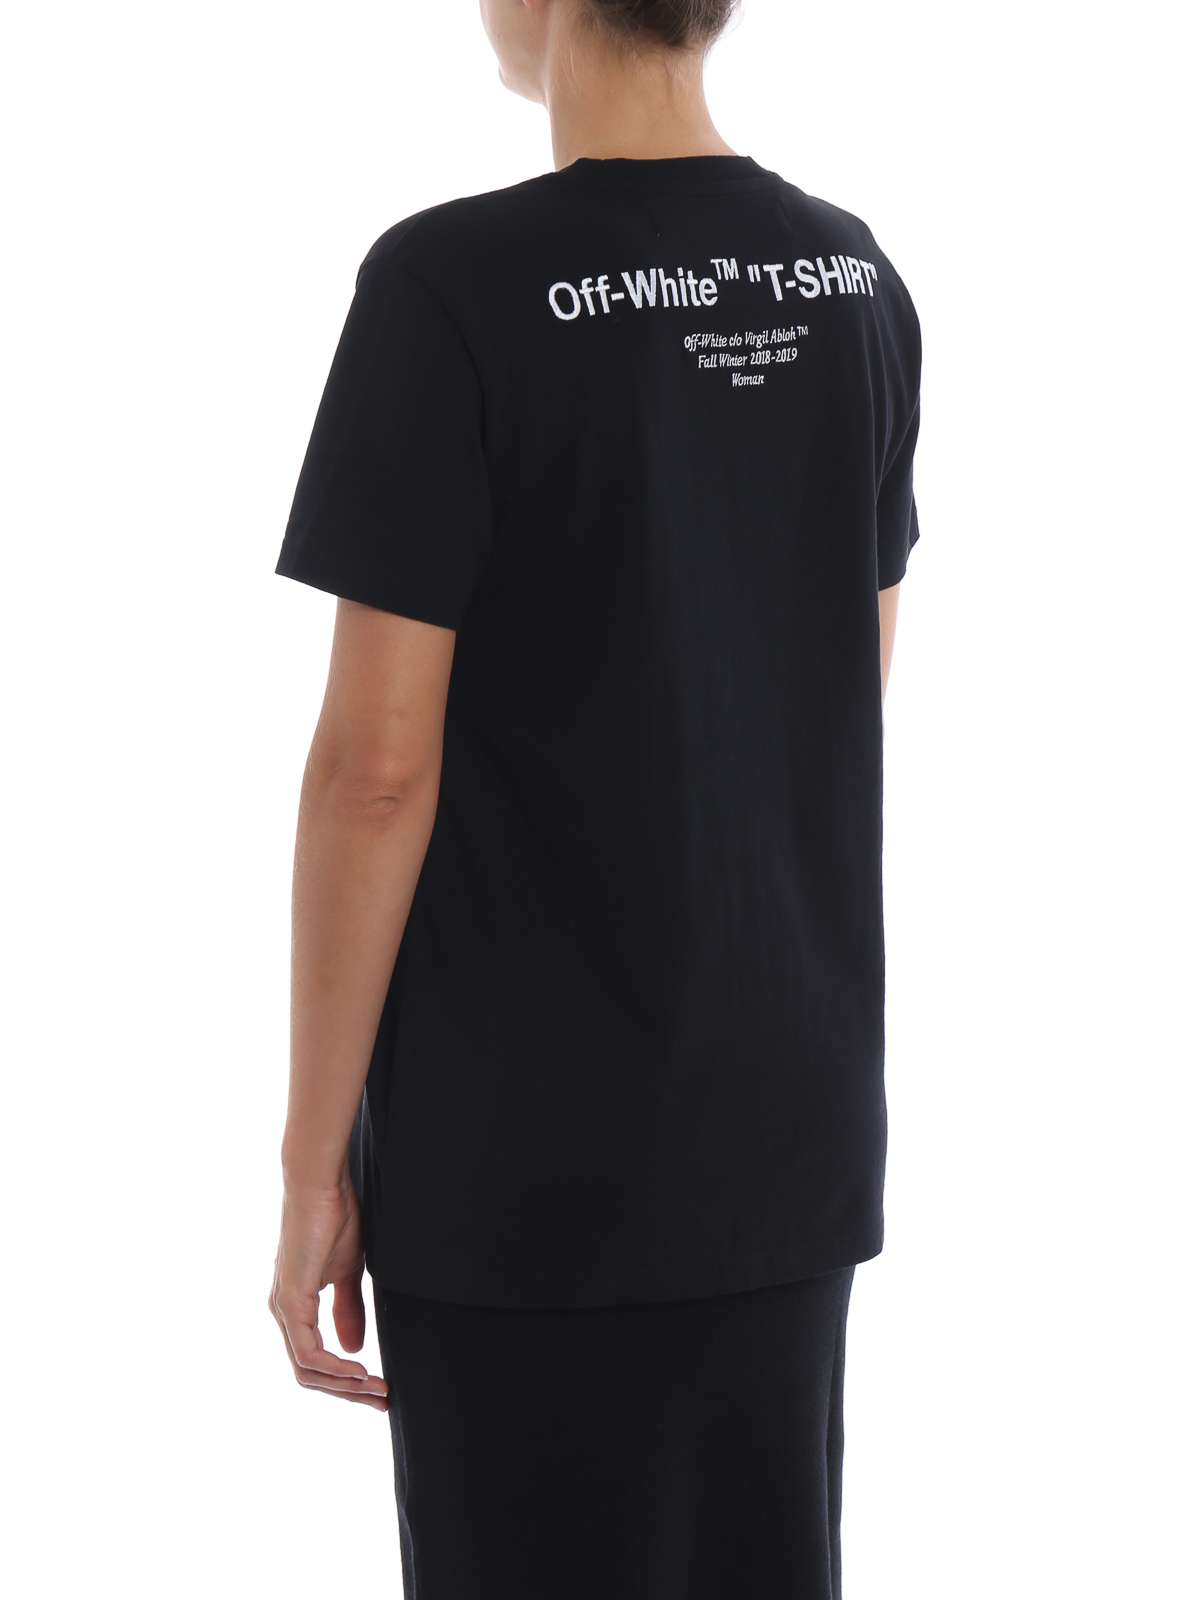 Off-White Off-White black T-shirt - OWAA049E18B070341001